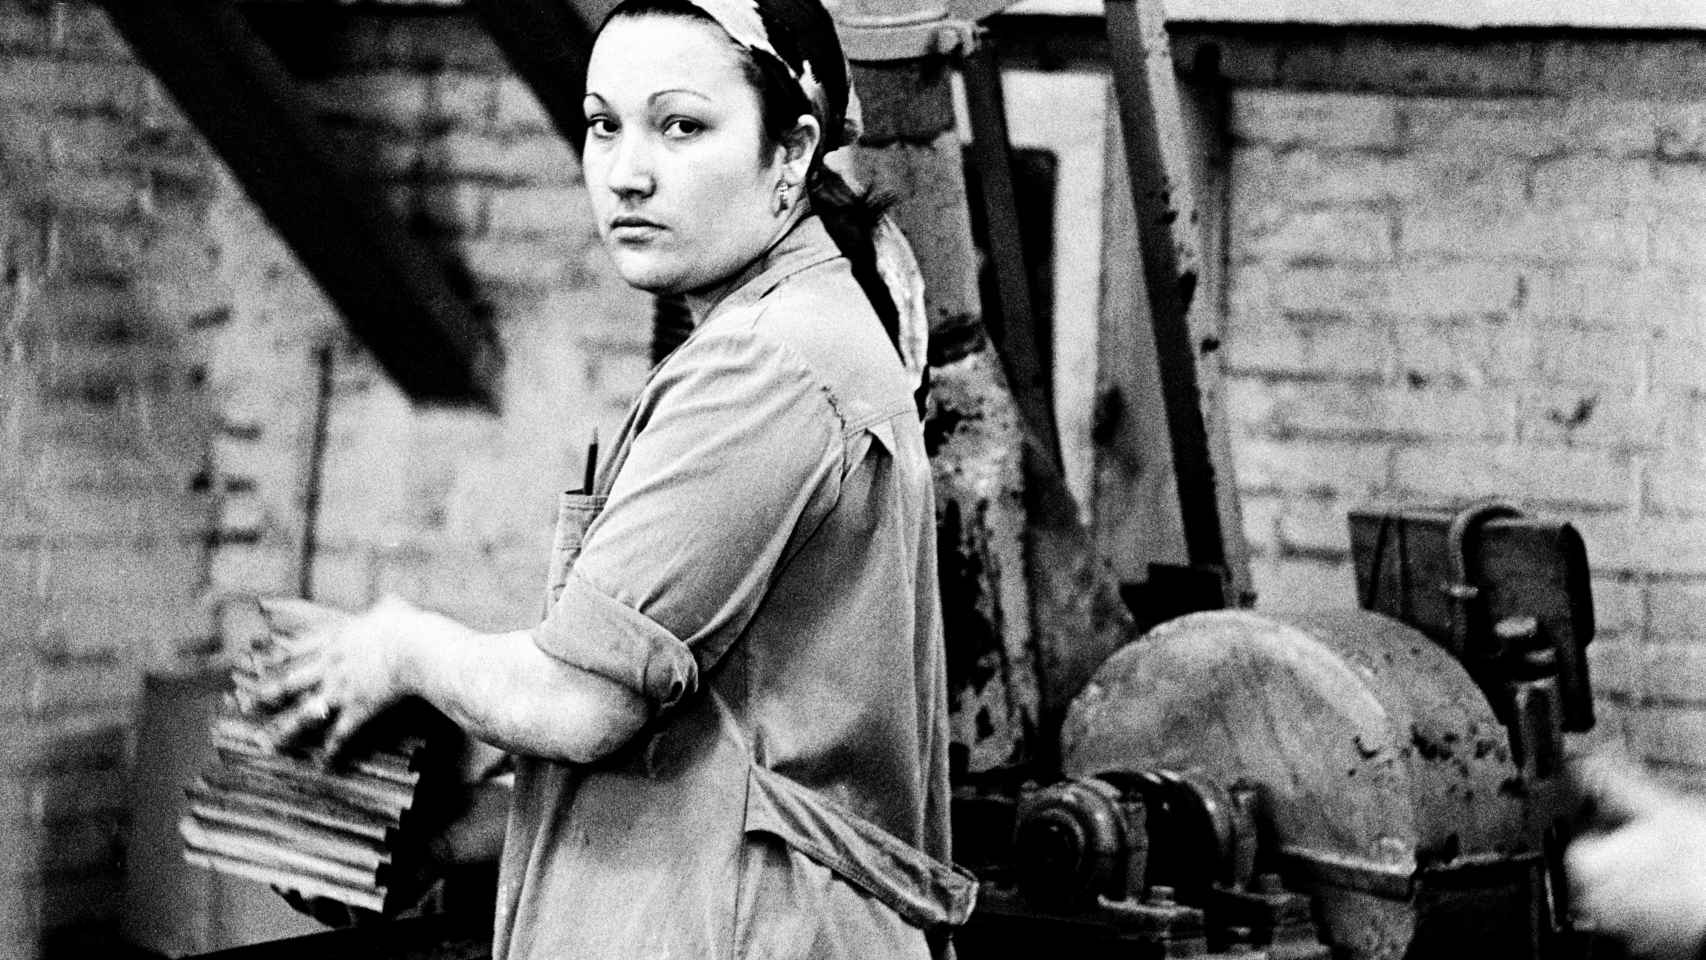 Obrera en la fábrica. Barcelona, 1976. De la serie 'Trabajo o faena'© Archivo Colita Fotografía